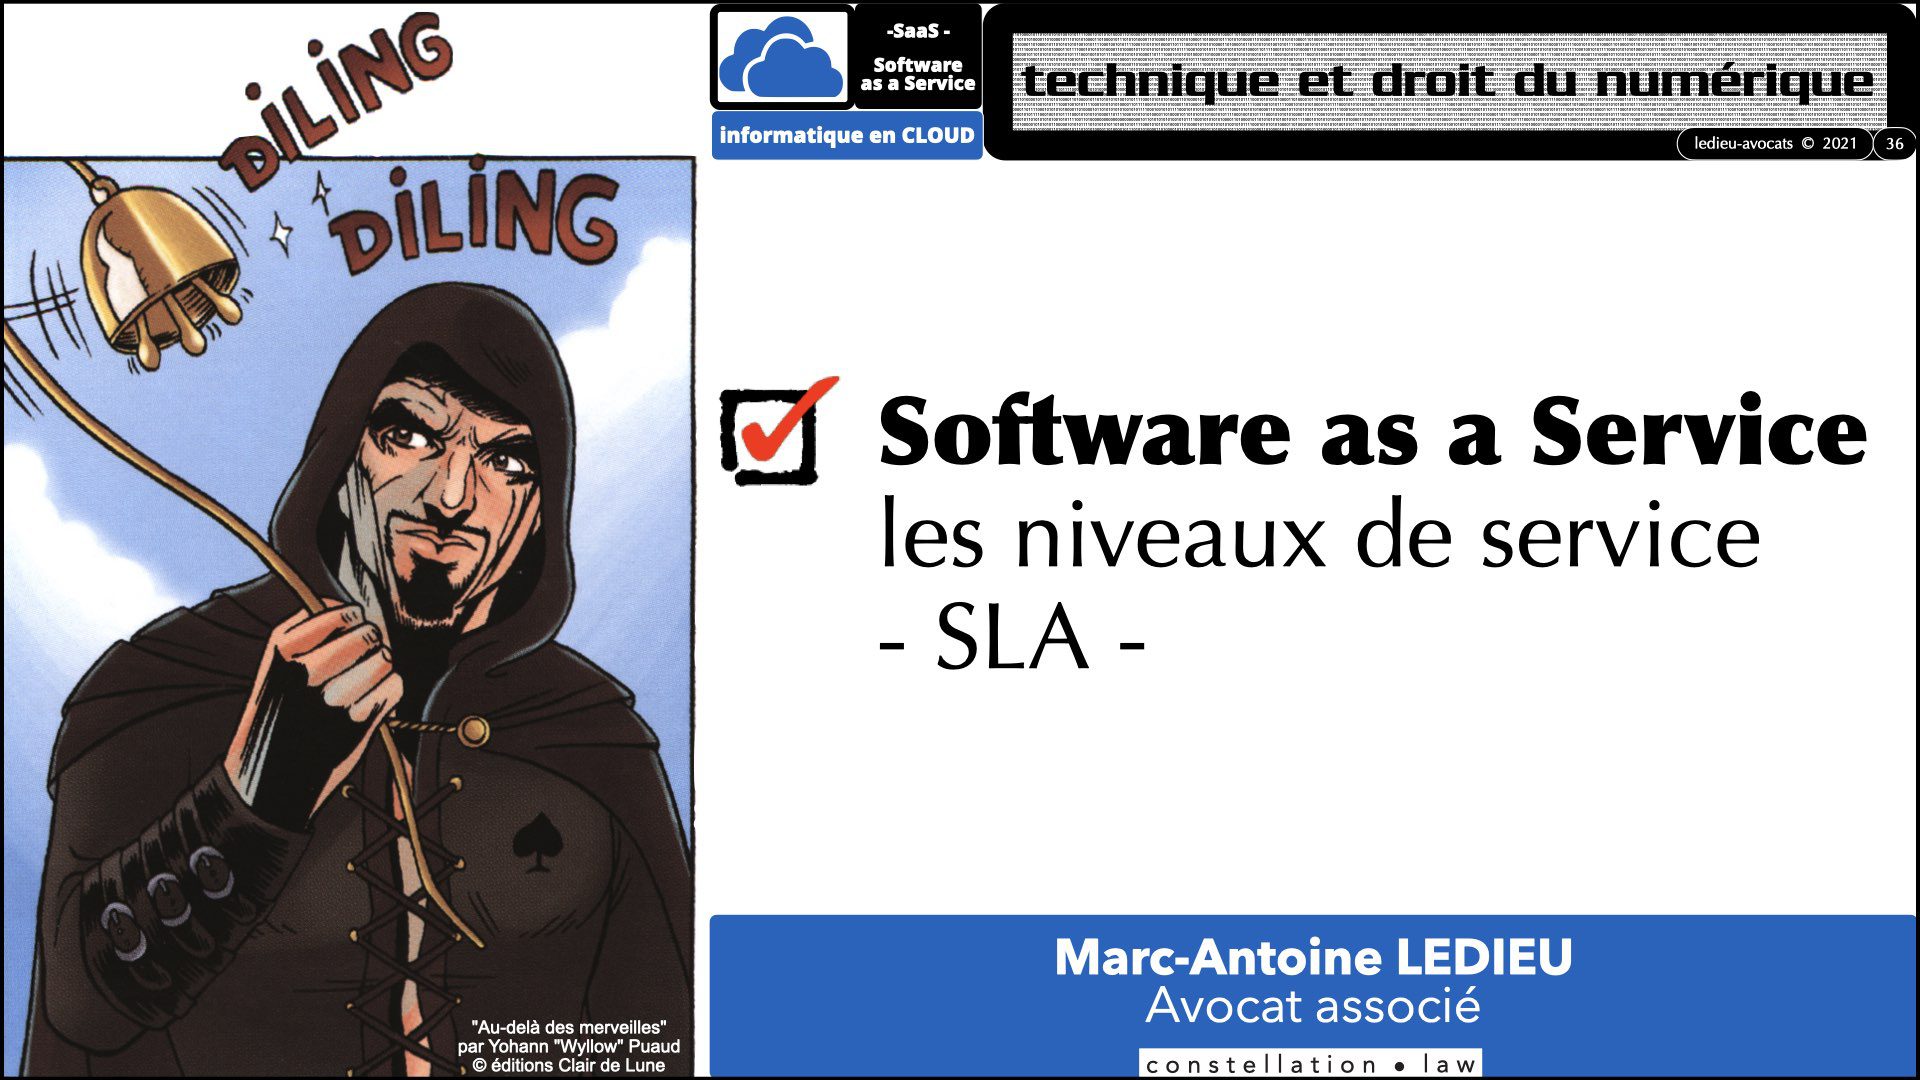 343 service LOGICIEL SaaS Software-as-a-Service cloud computing © Ledieu-Avocats technique droit numerique 30-08-2021.036